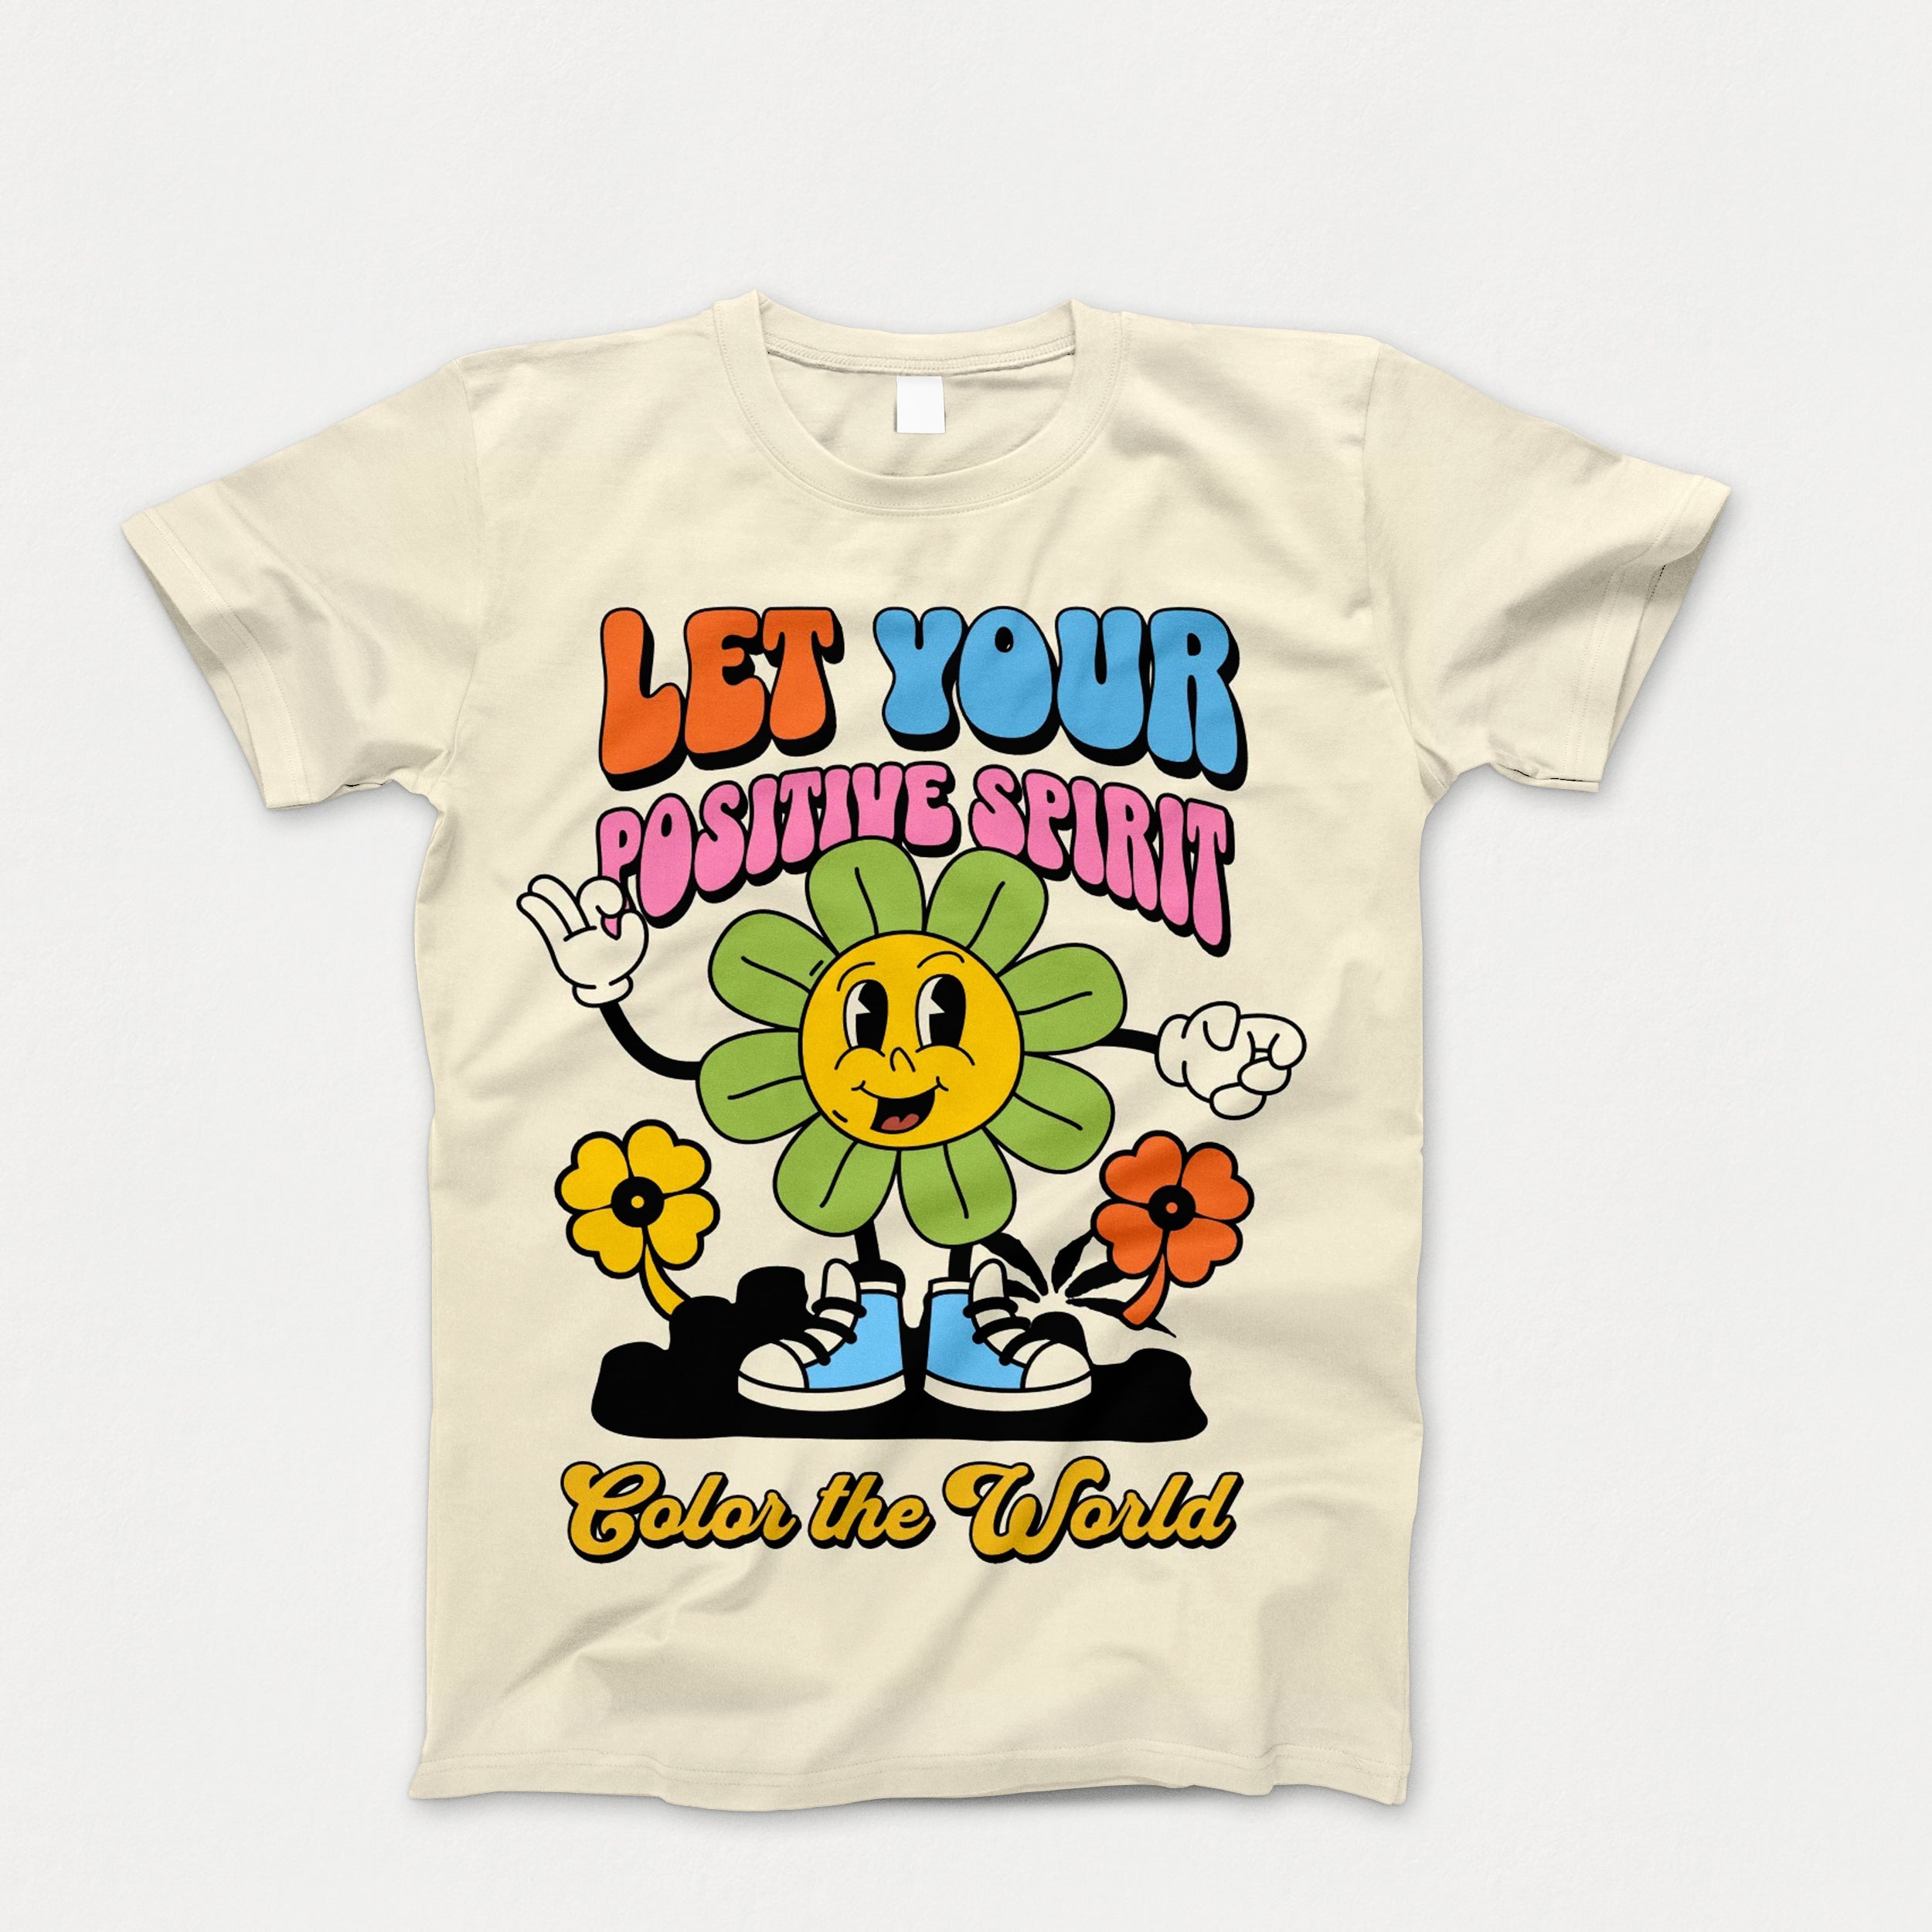 Kids Positive Spirit Tee Shirt